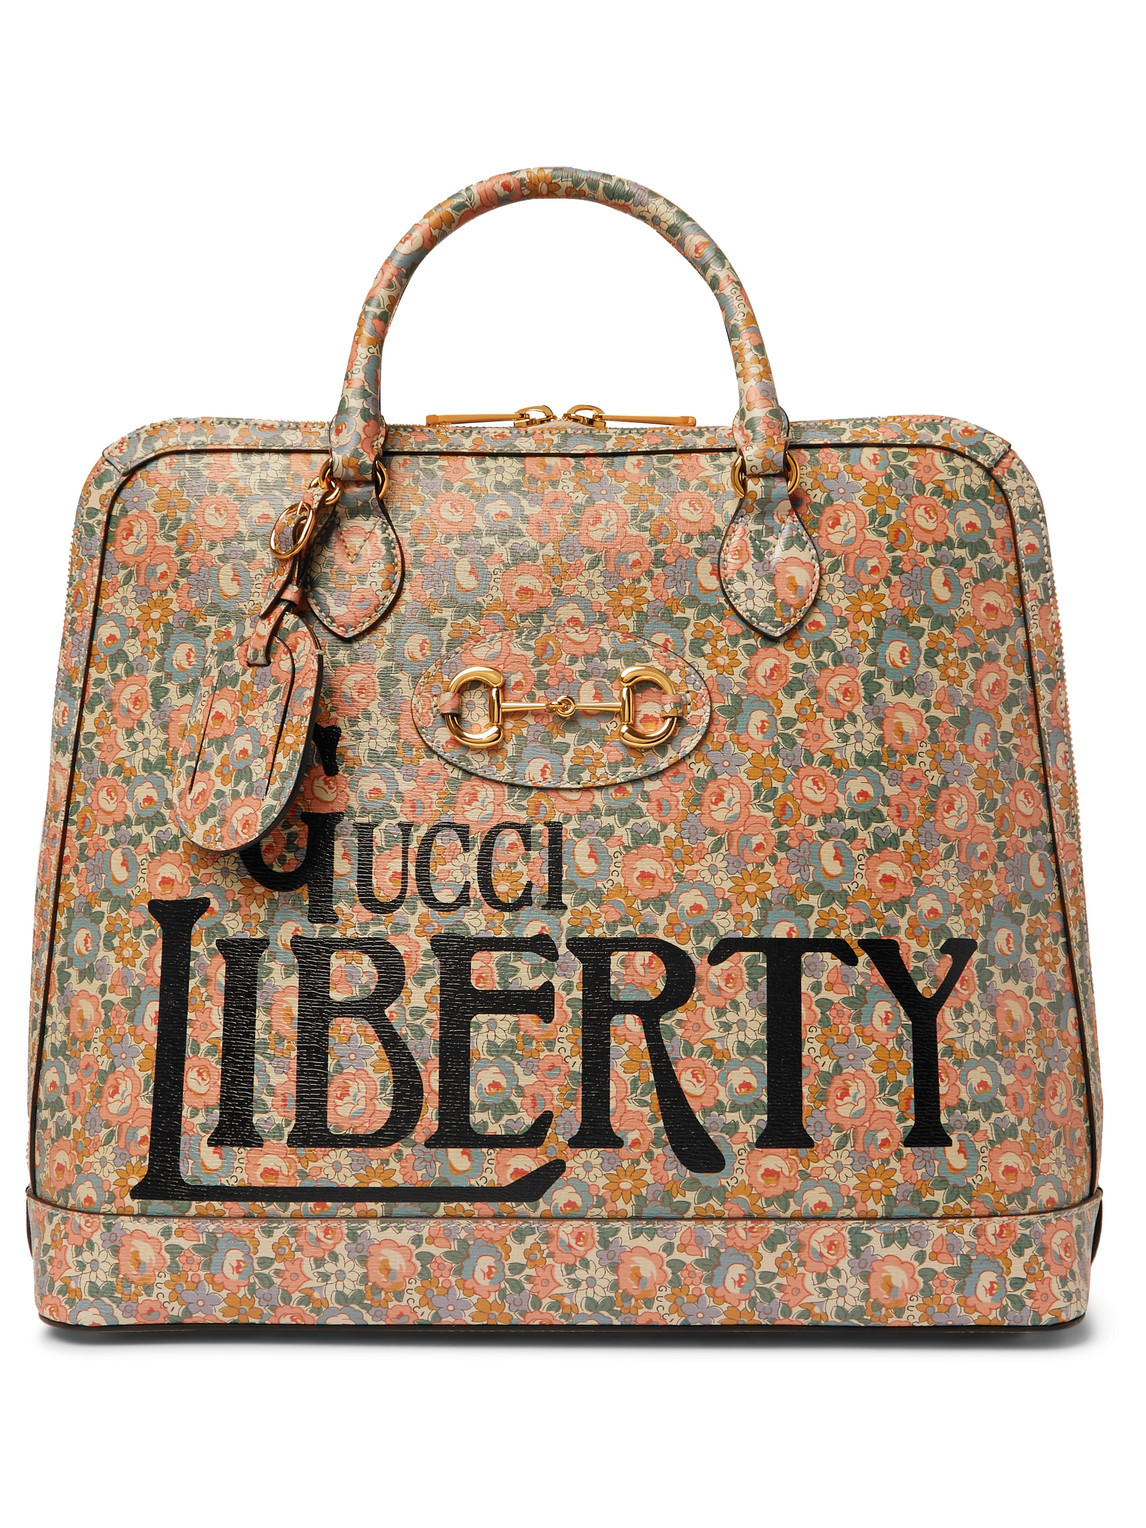 Gucci - Liberty Horsebit 1955 Printed Leather Tote Bag - Men - Multi for Men